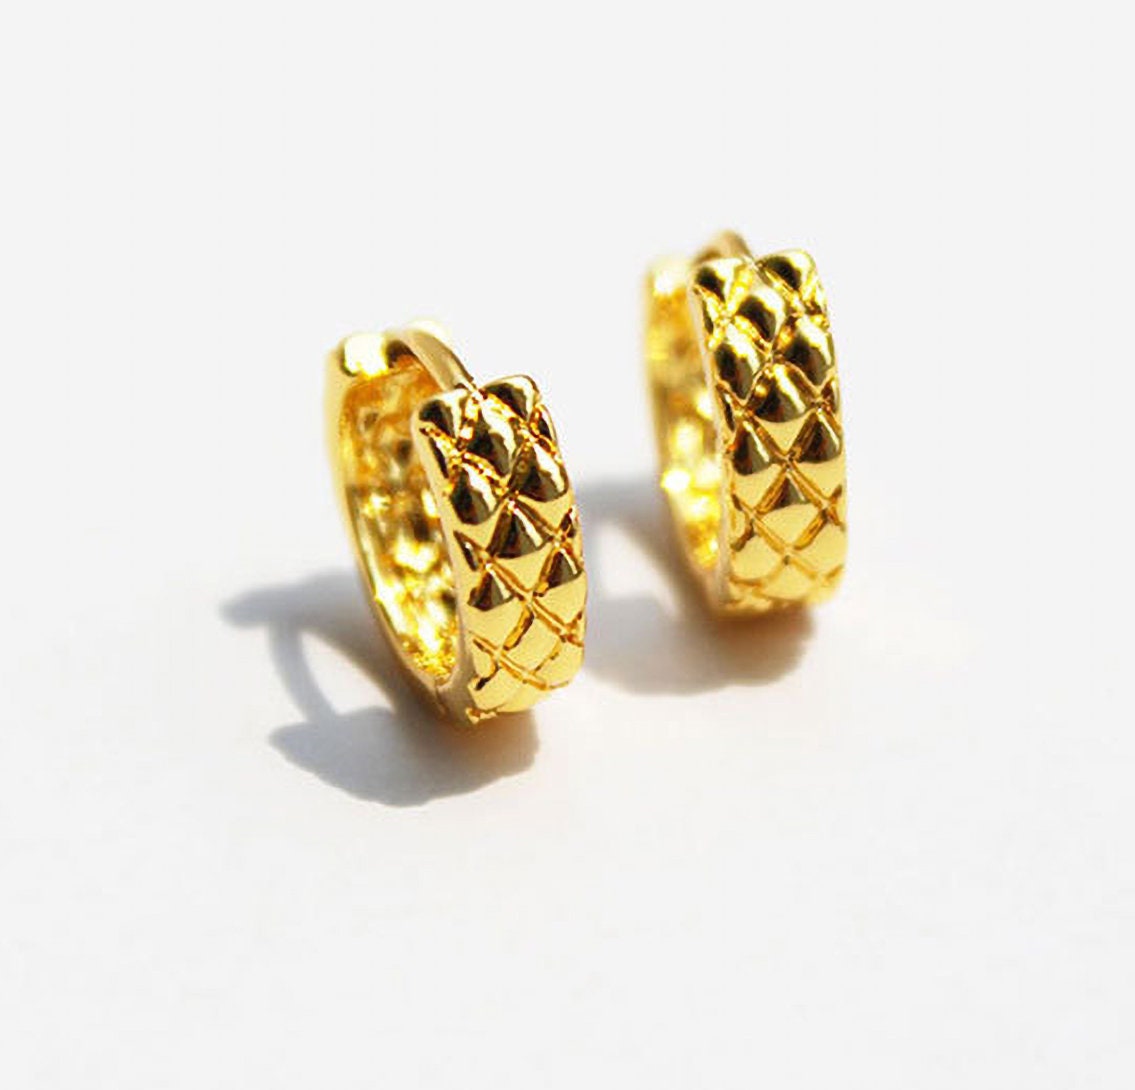 Men's Black Hoop Earrings - Every Day earrings -Fashion Men's Earrings -  Nadin Art Design - Personalized Jewelry